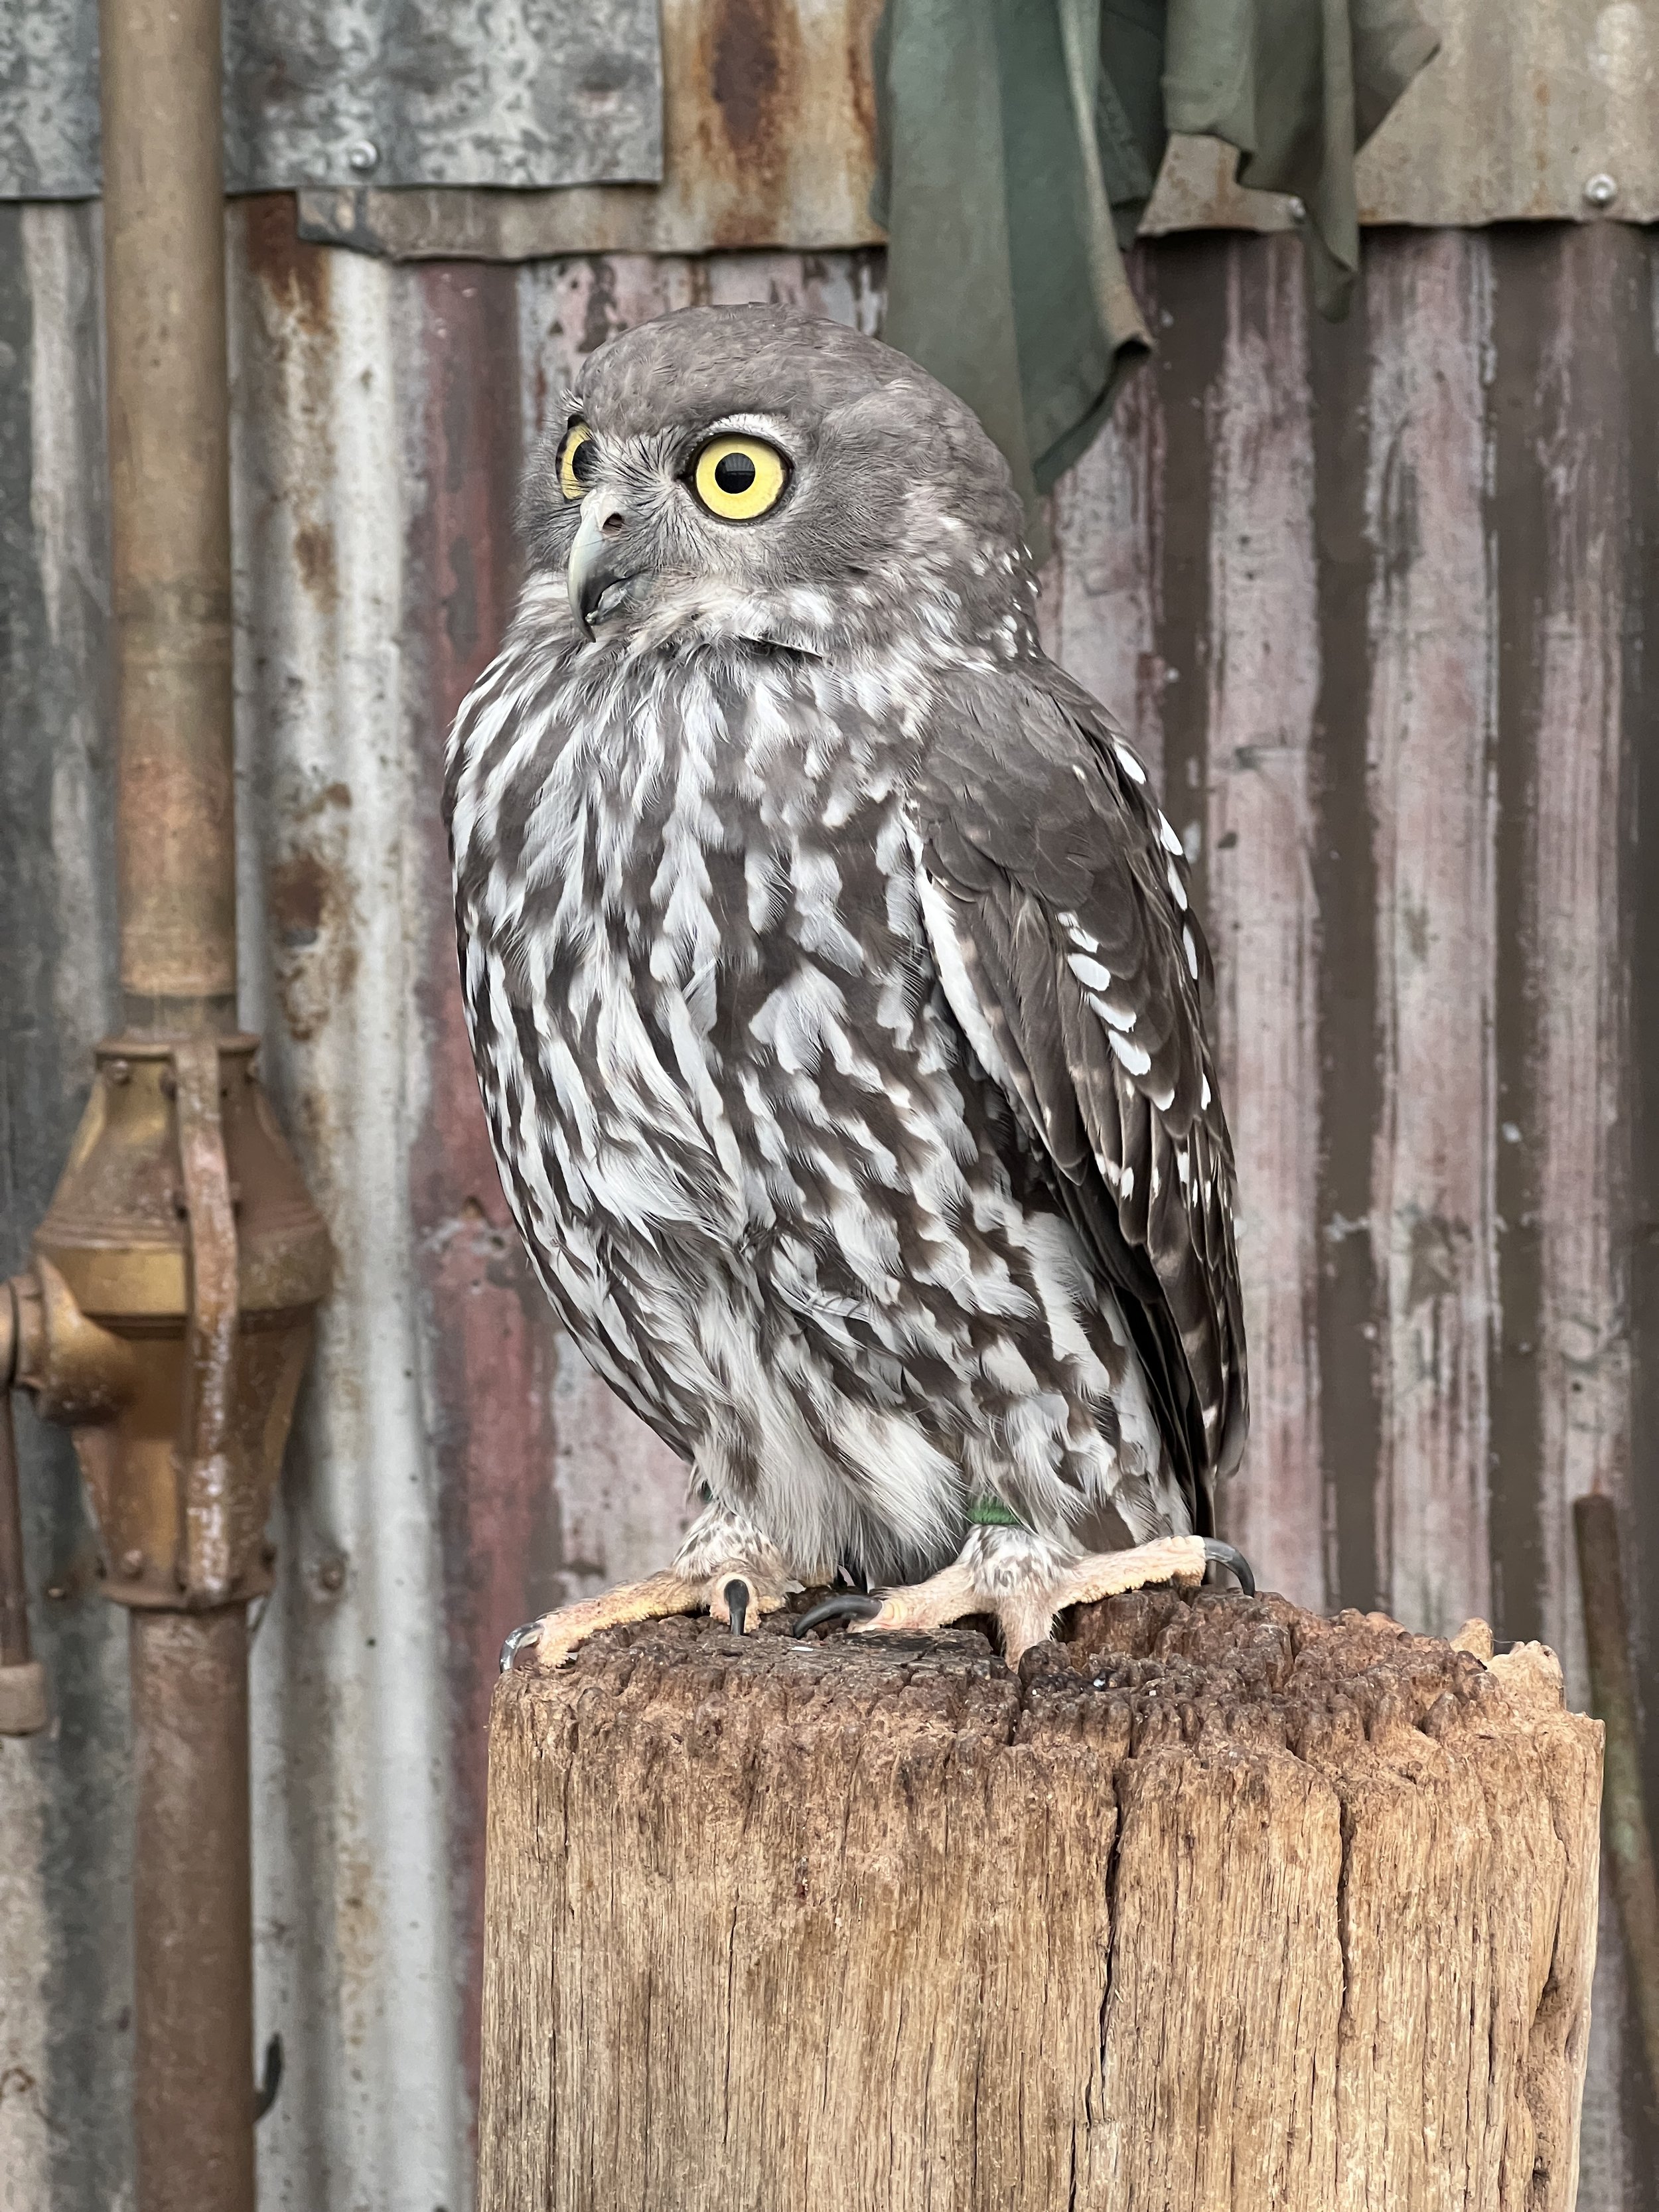 A native owl